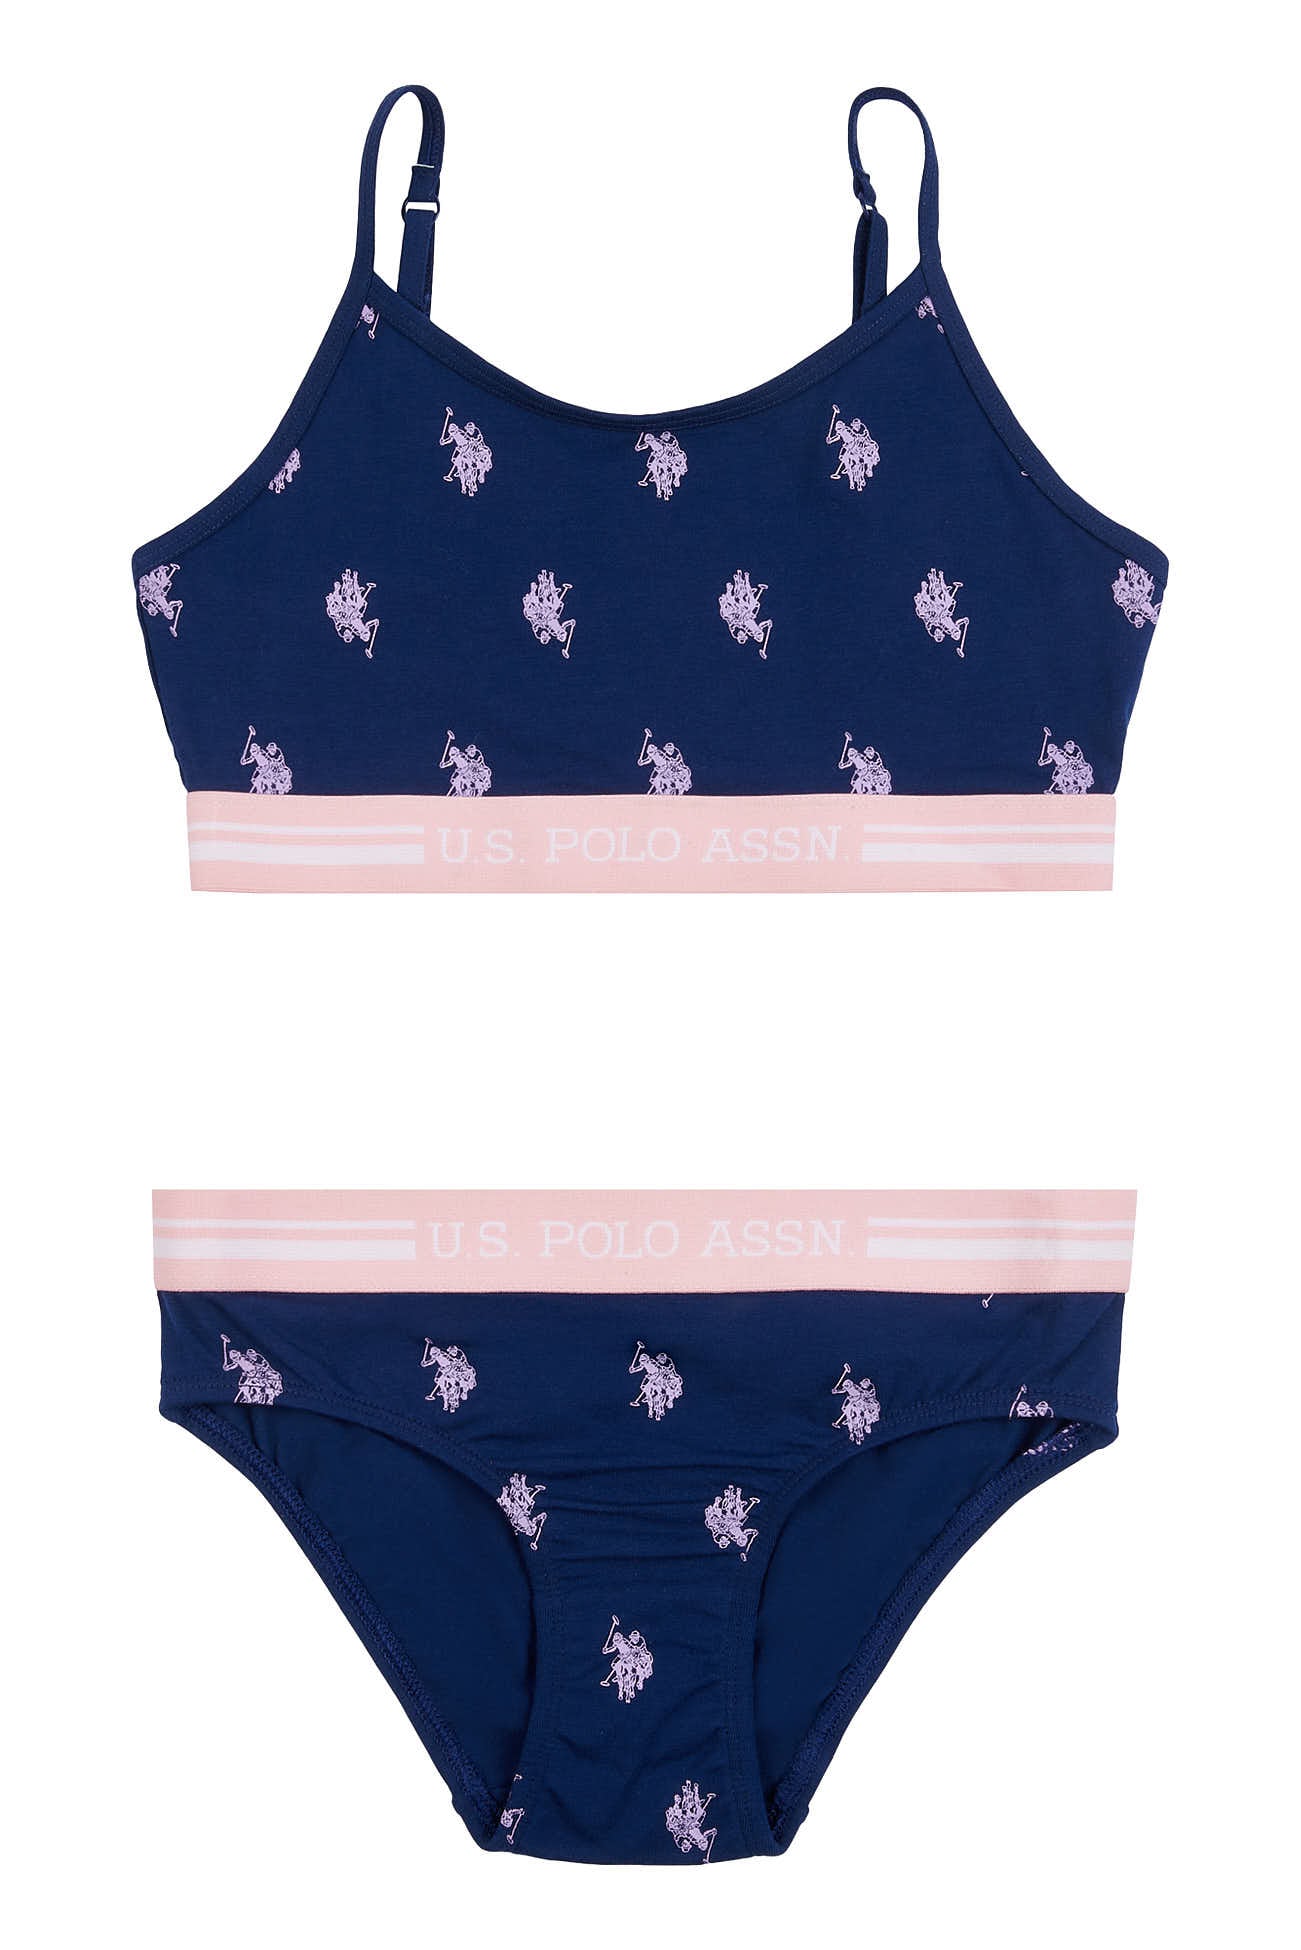 U.S. Polo Assn. Girls Bralette and Brief Underwear Set in Blue